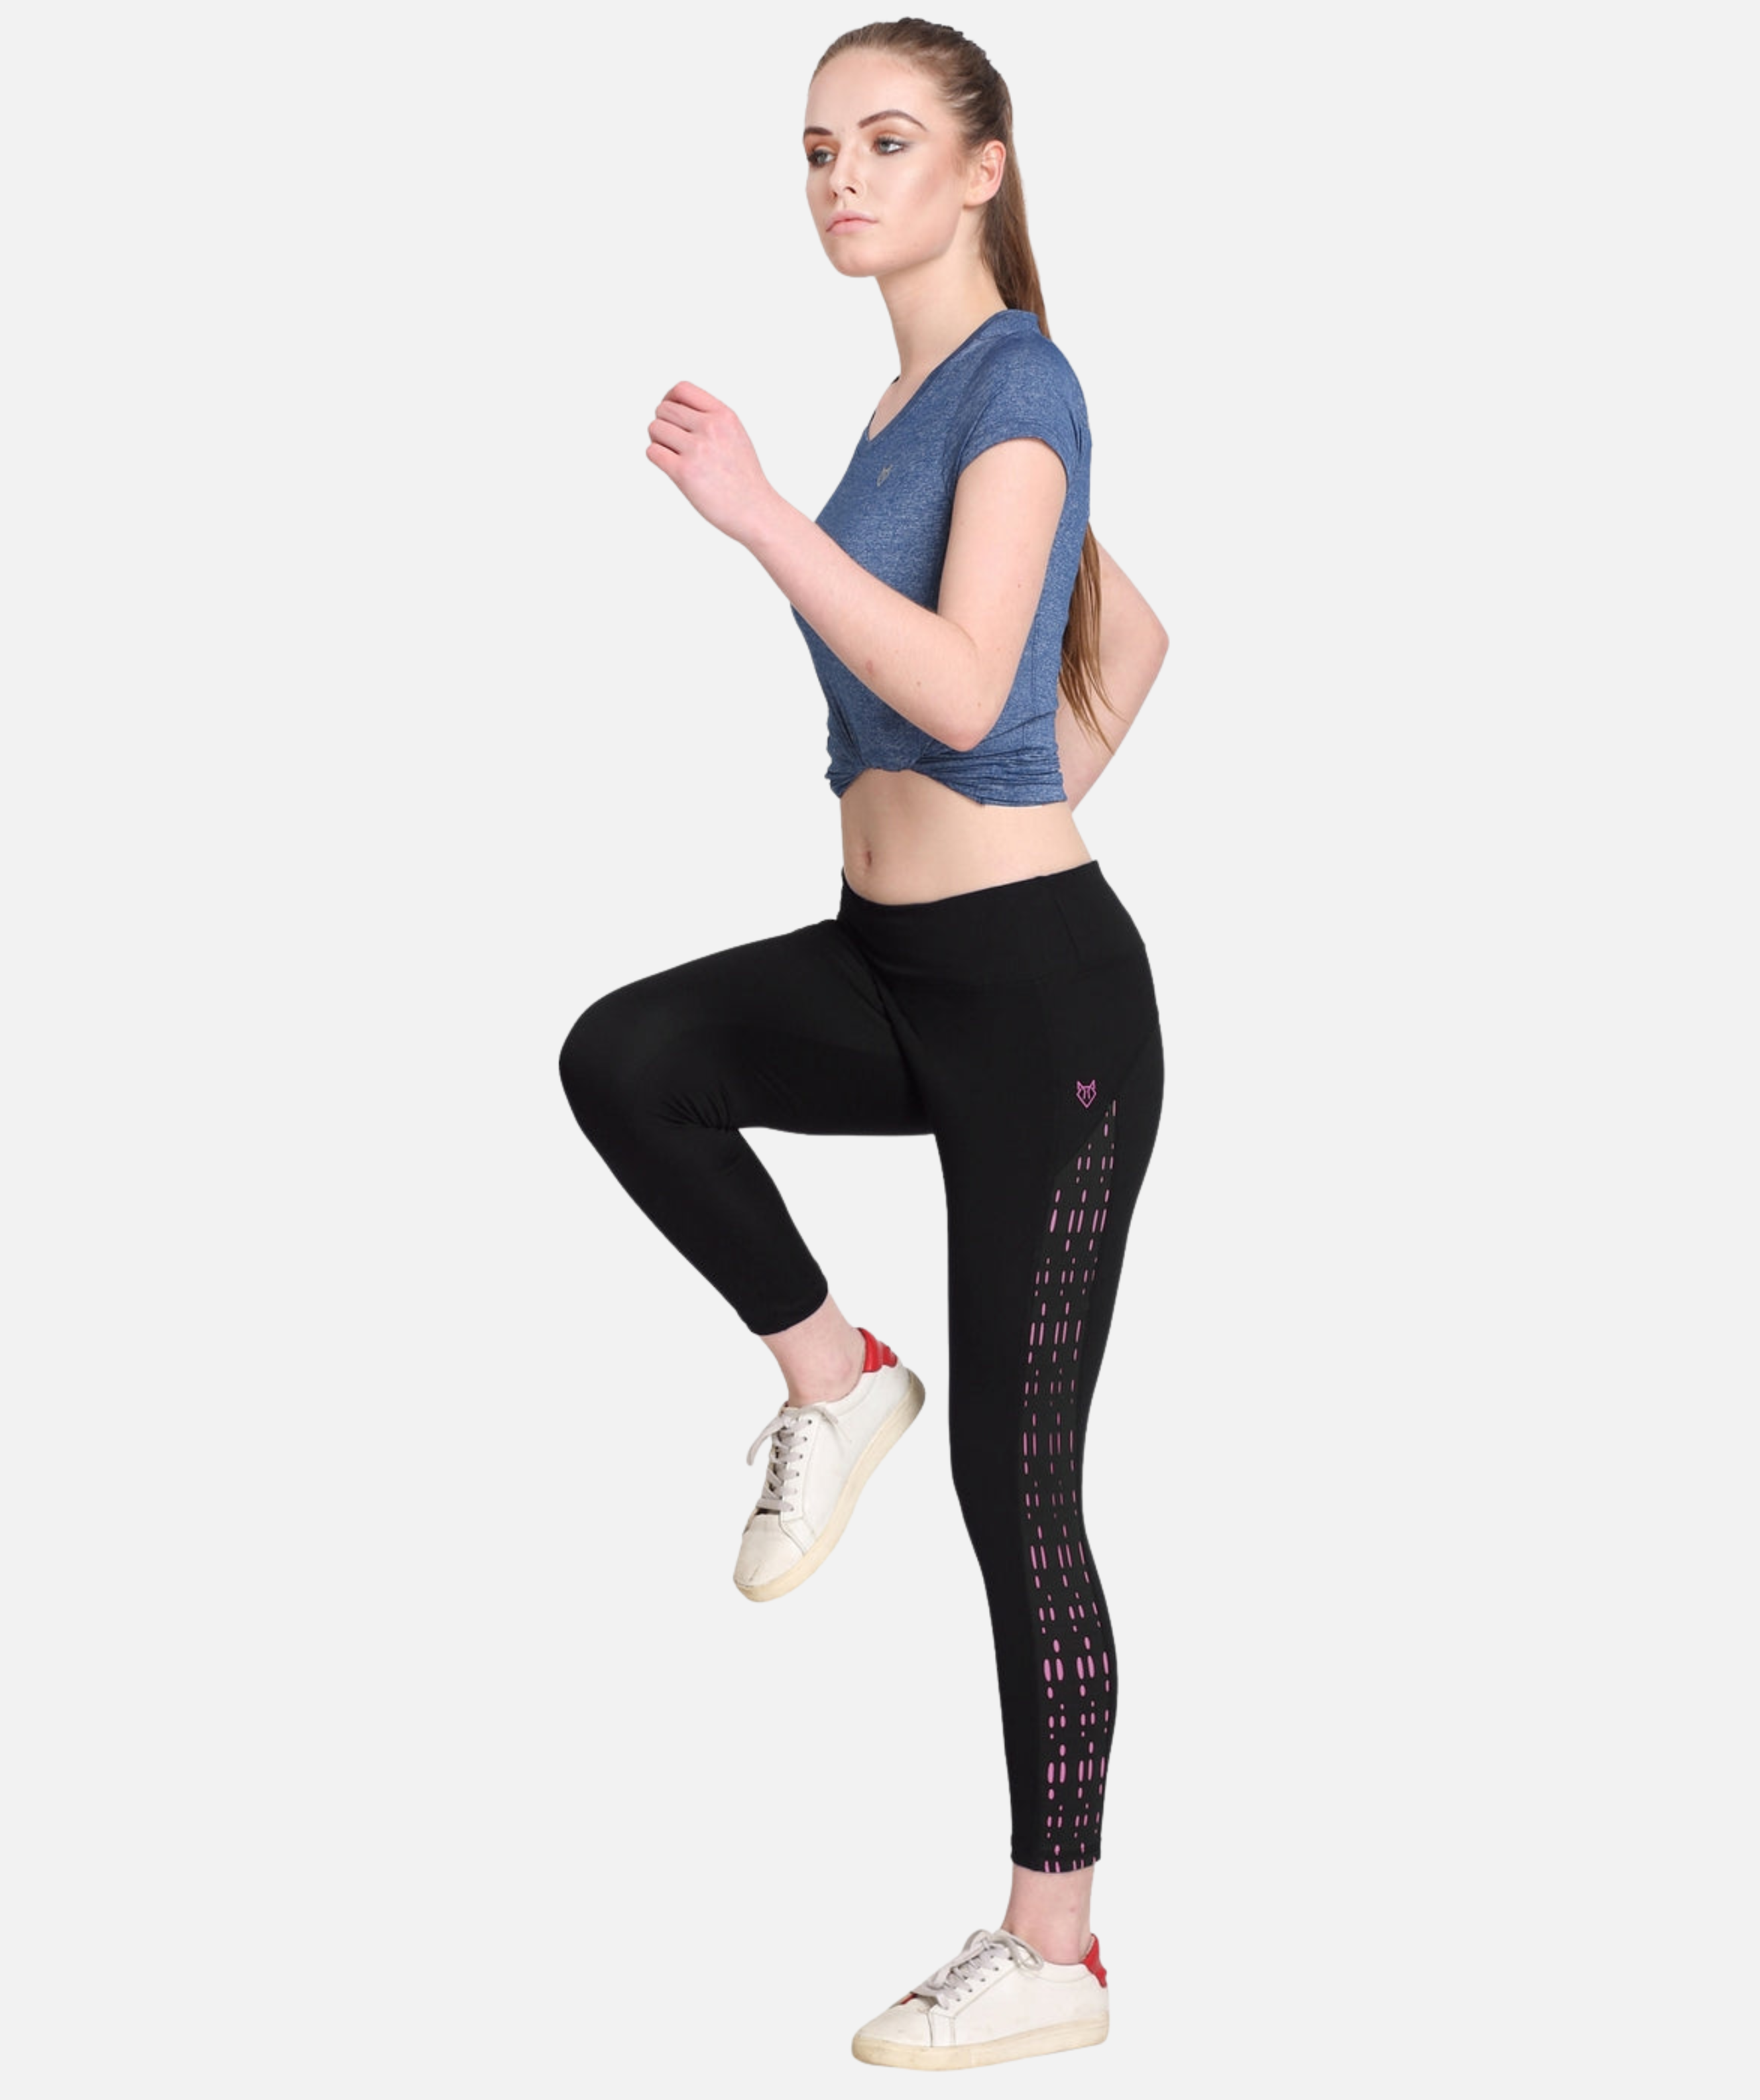 GYM Lower for Women | Laser Designer | Legging stretch Women's Lower